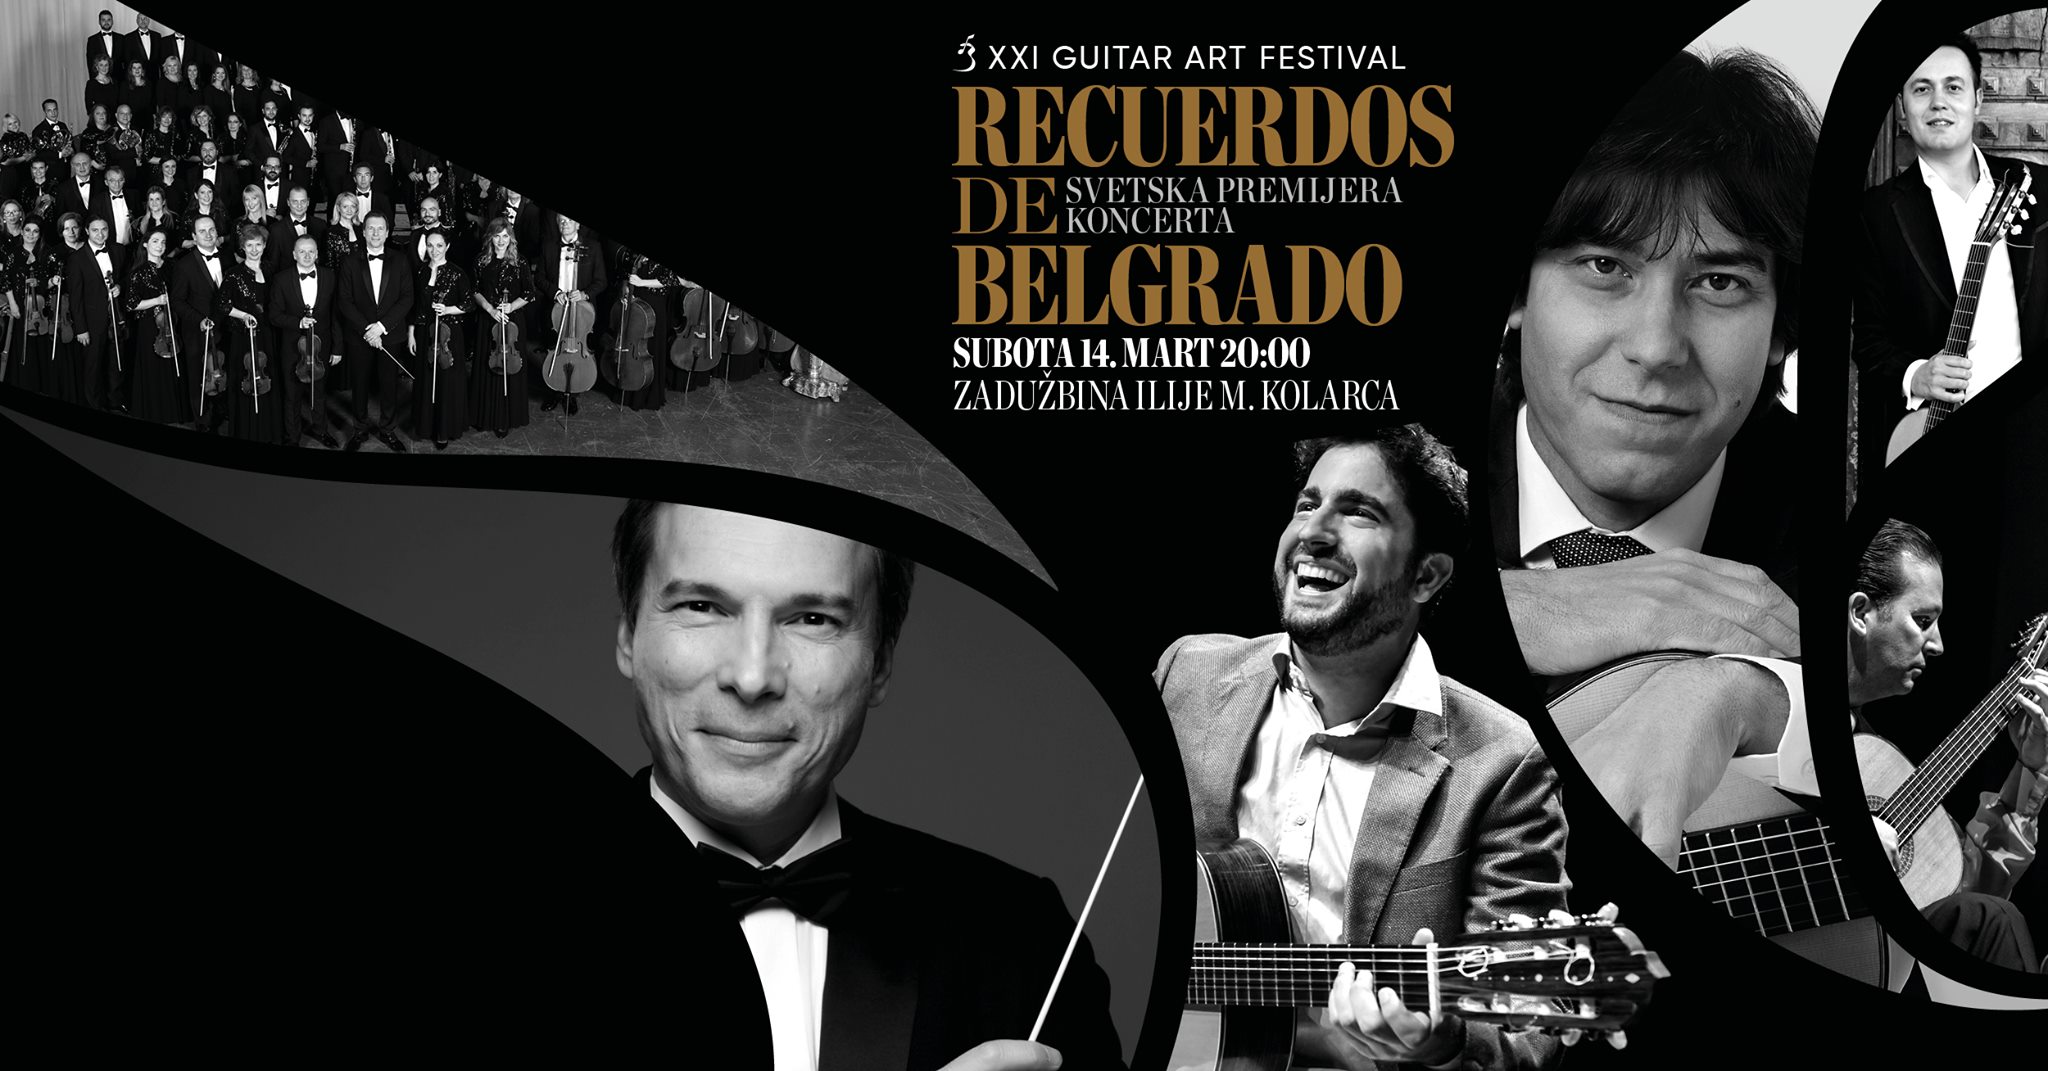 Svetska premijera koncerta “Recuerdos de Belgrado” 09.10.2020. Kolarac